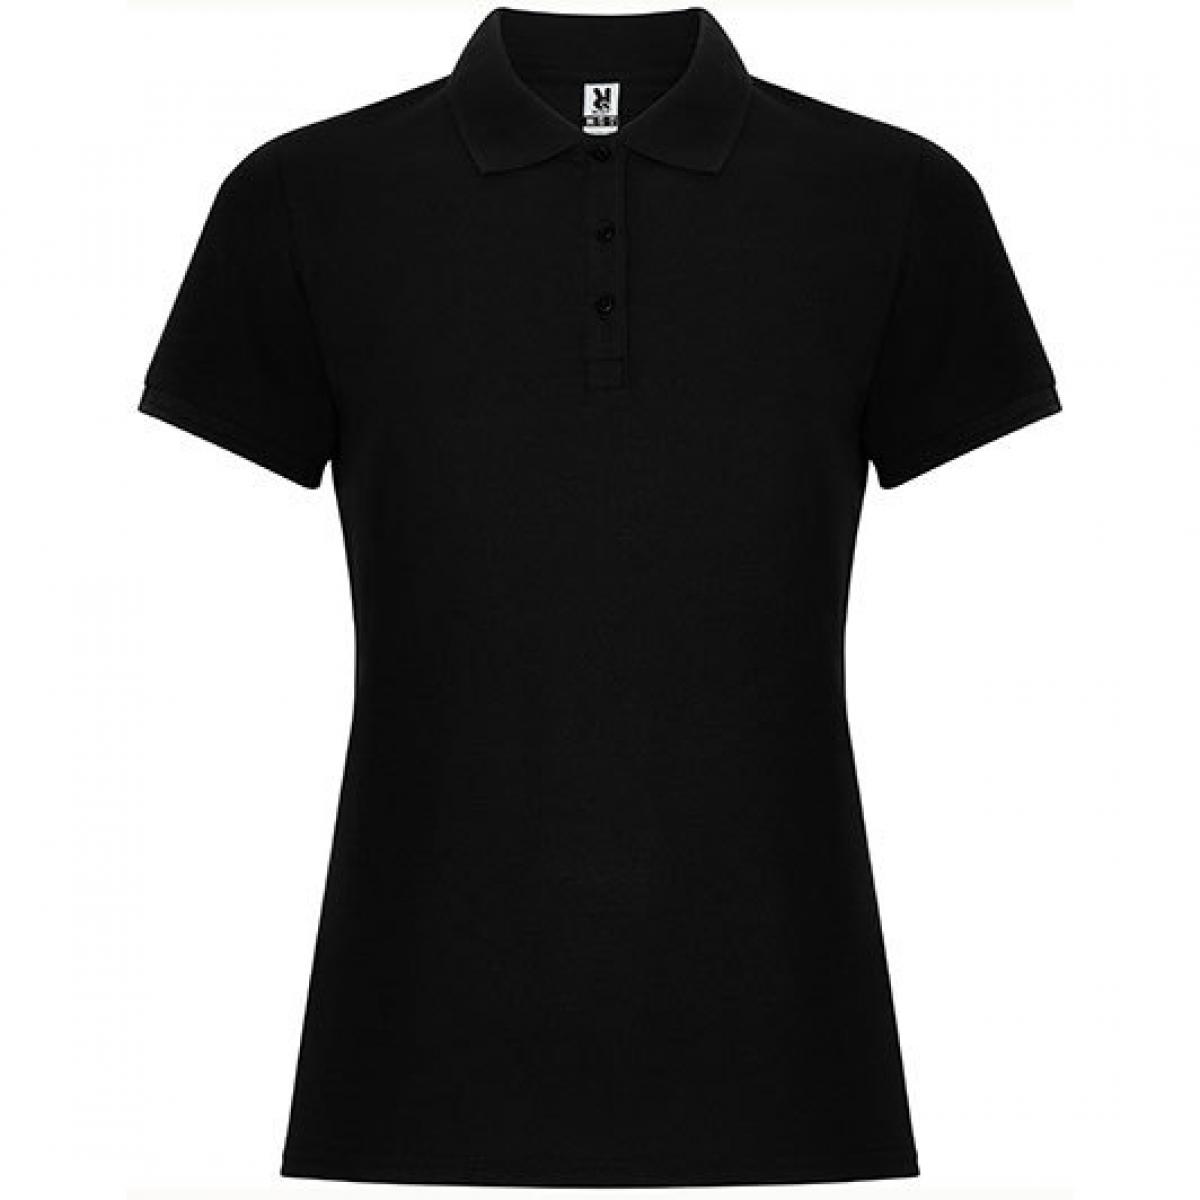 Hersteller: Roly Herstellernummer: PO6644 Artikelbezeichnung: Pegaso Woman Premium Poloshirt - Piqué Farbe: Black 02